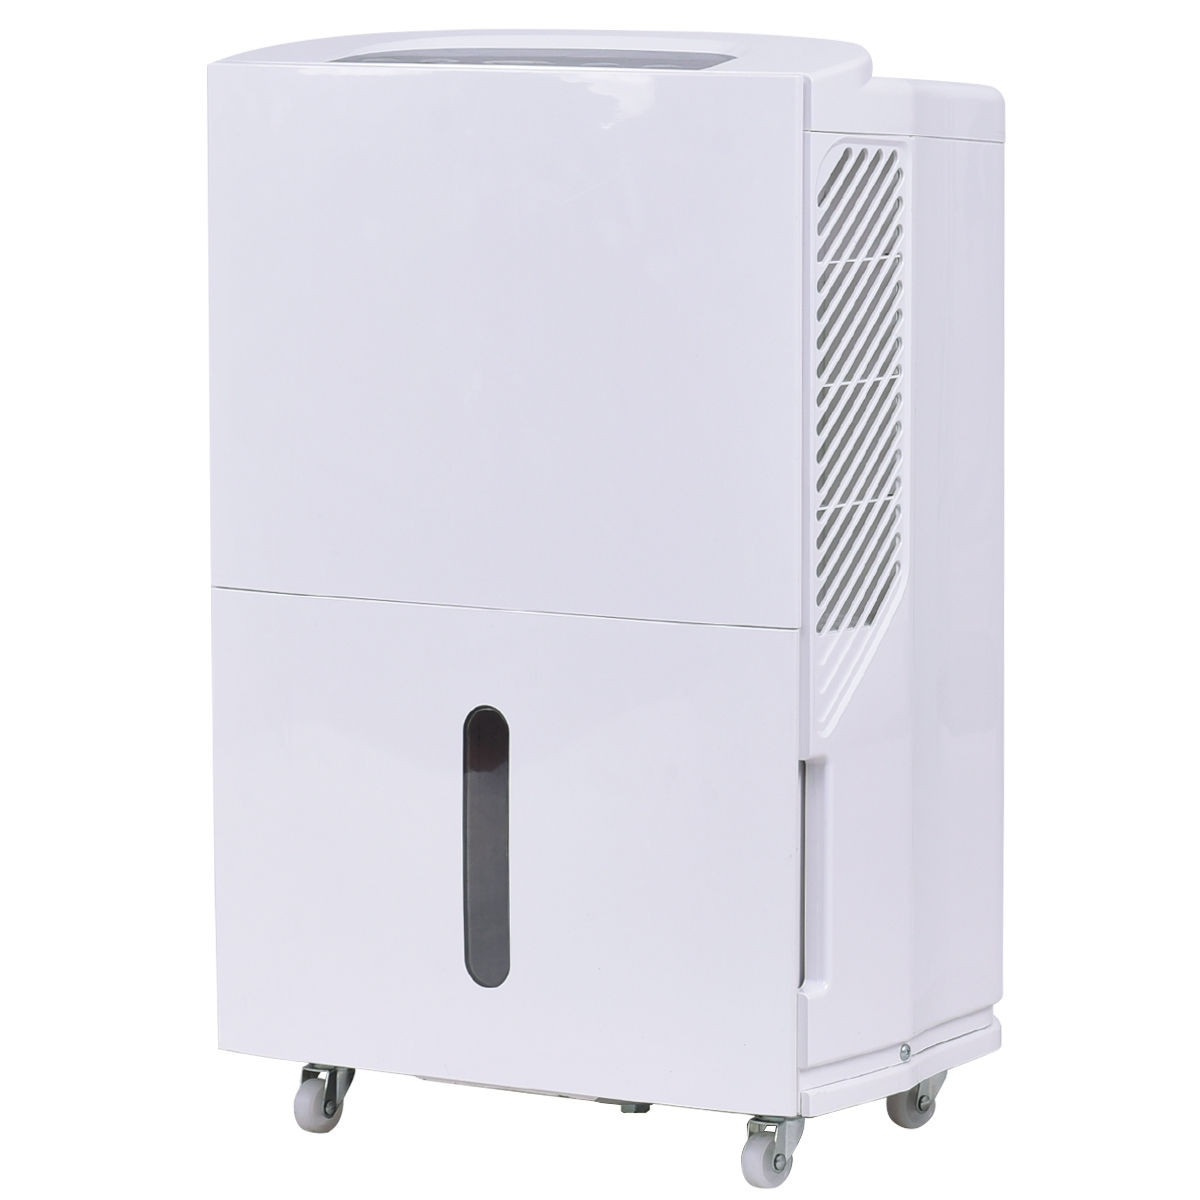 Compact 50 Pint Dehumidifier 3-Speed Fan Air Filter